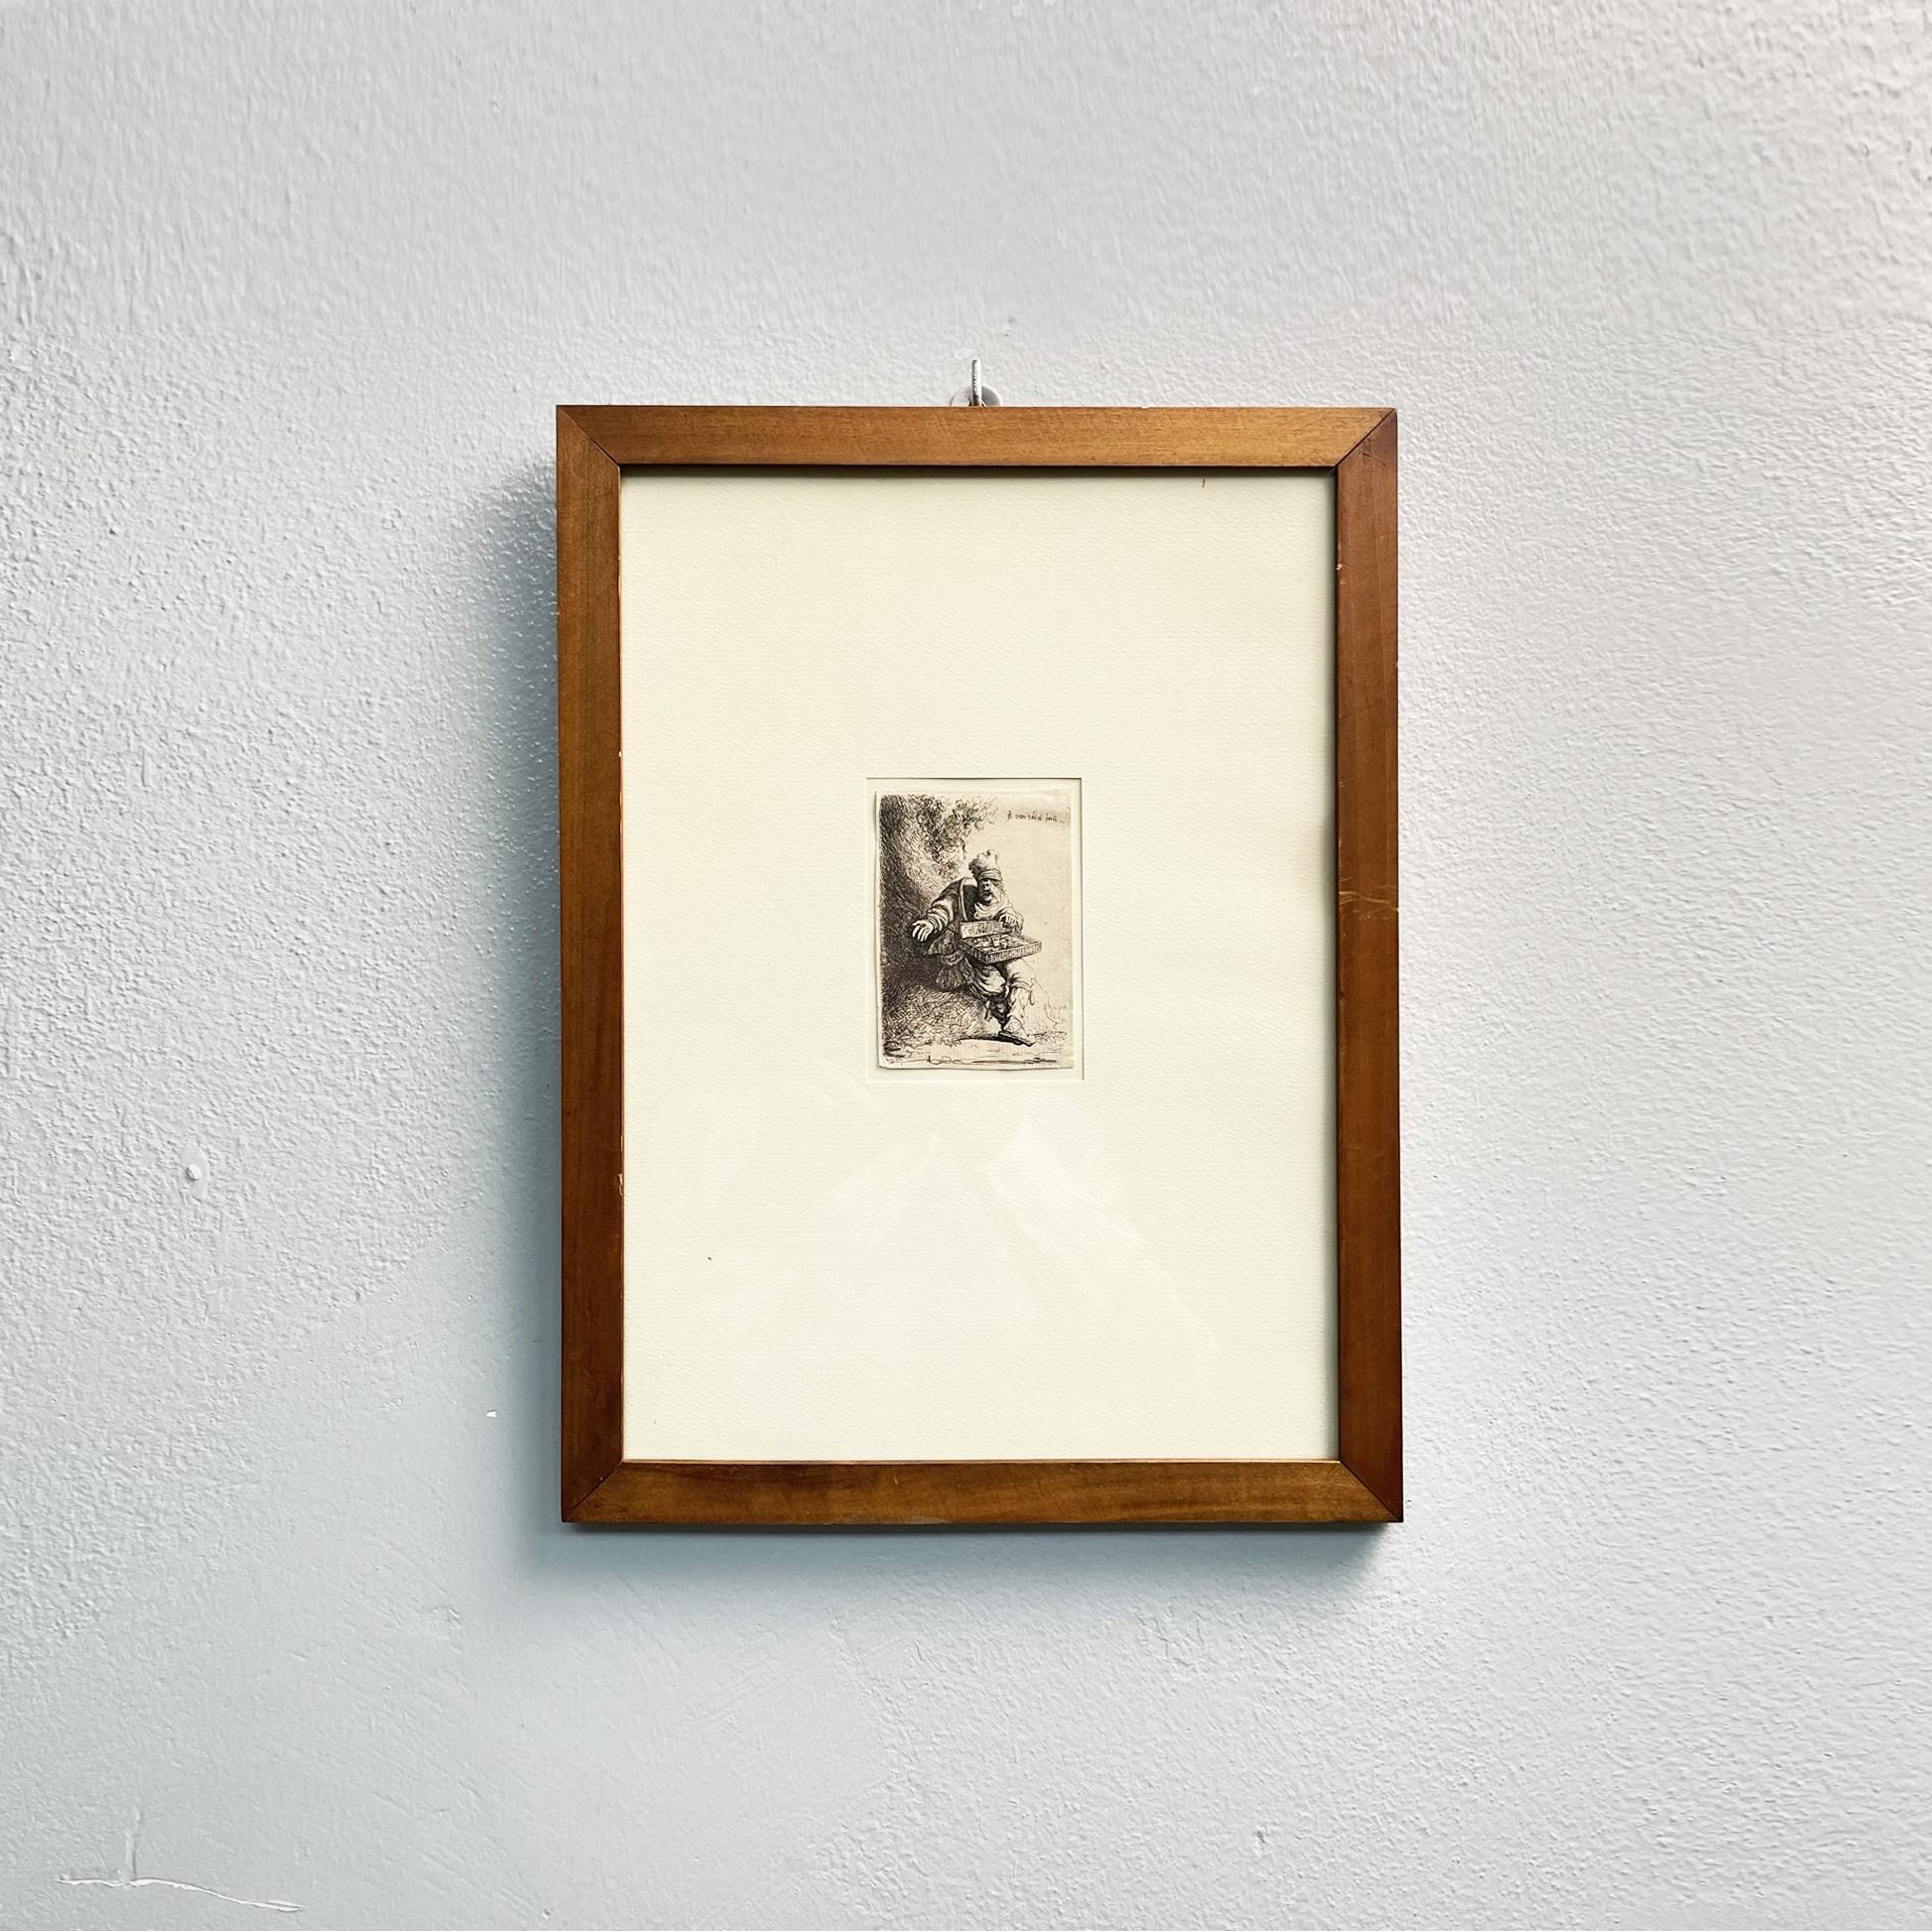 Antiquité italienne Image de gravure d'un vendeur de rue dans un cadre en bois, 1800s
Impression réalisée à l'aide de la technique de la gravure à l'eau-forte sur papier, représentant un vendeur de rue vendant des marchandises à partir de son